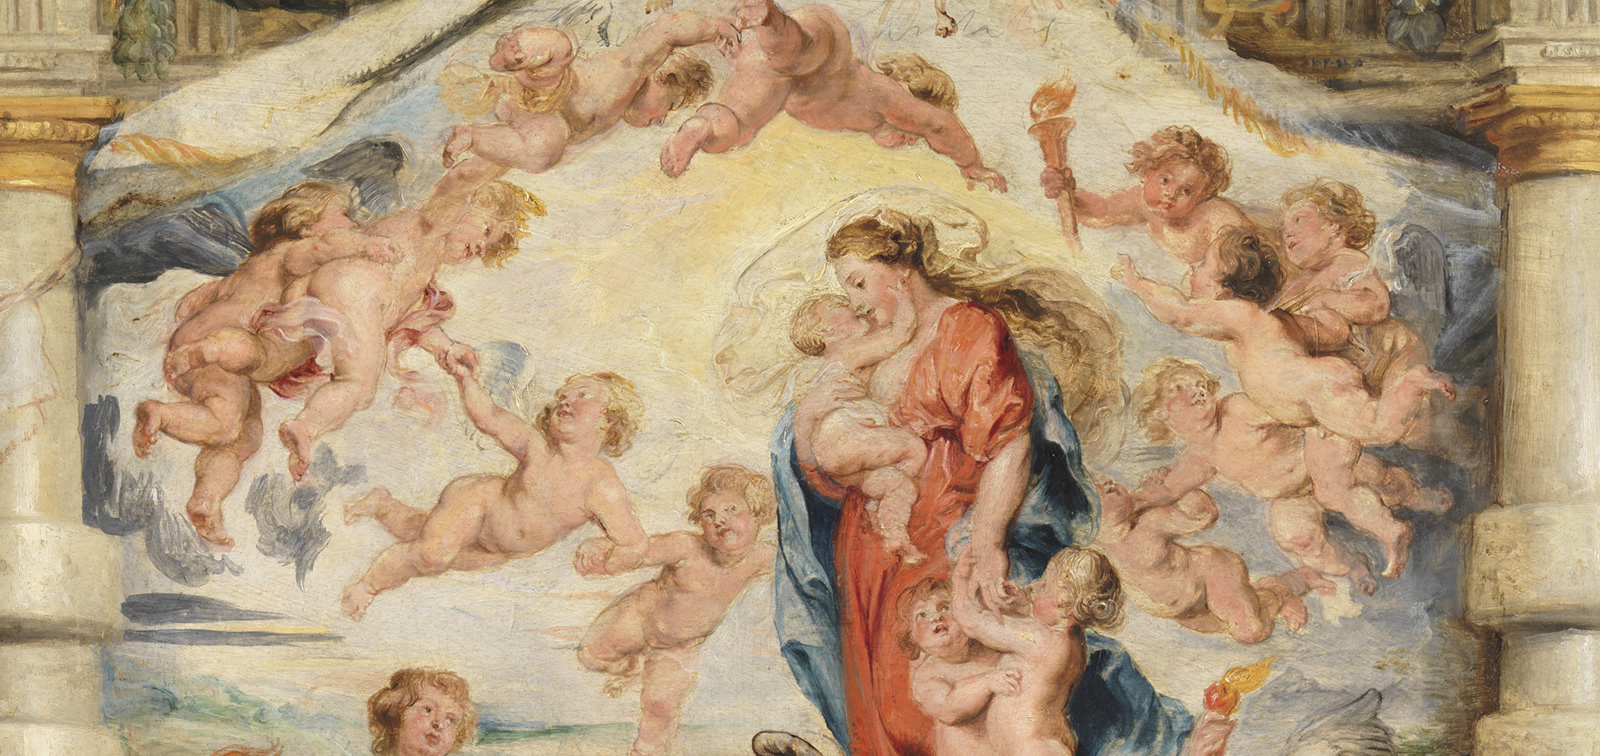 Rubens. The Triumph of the Eucharist